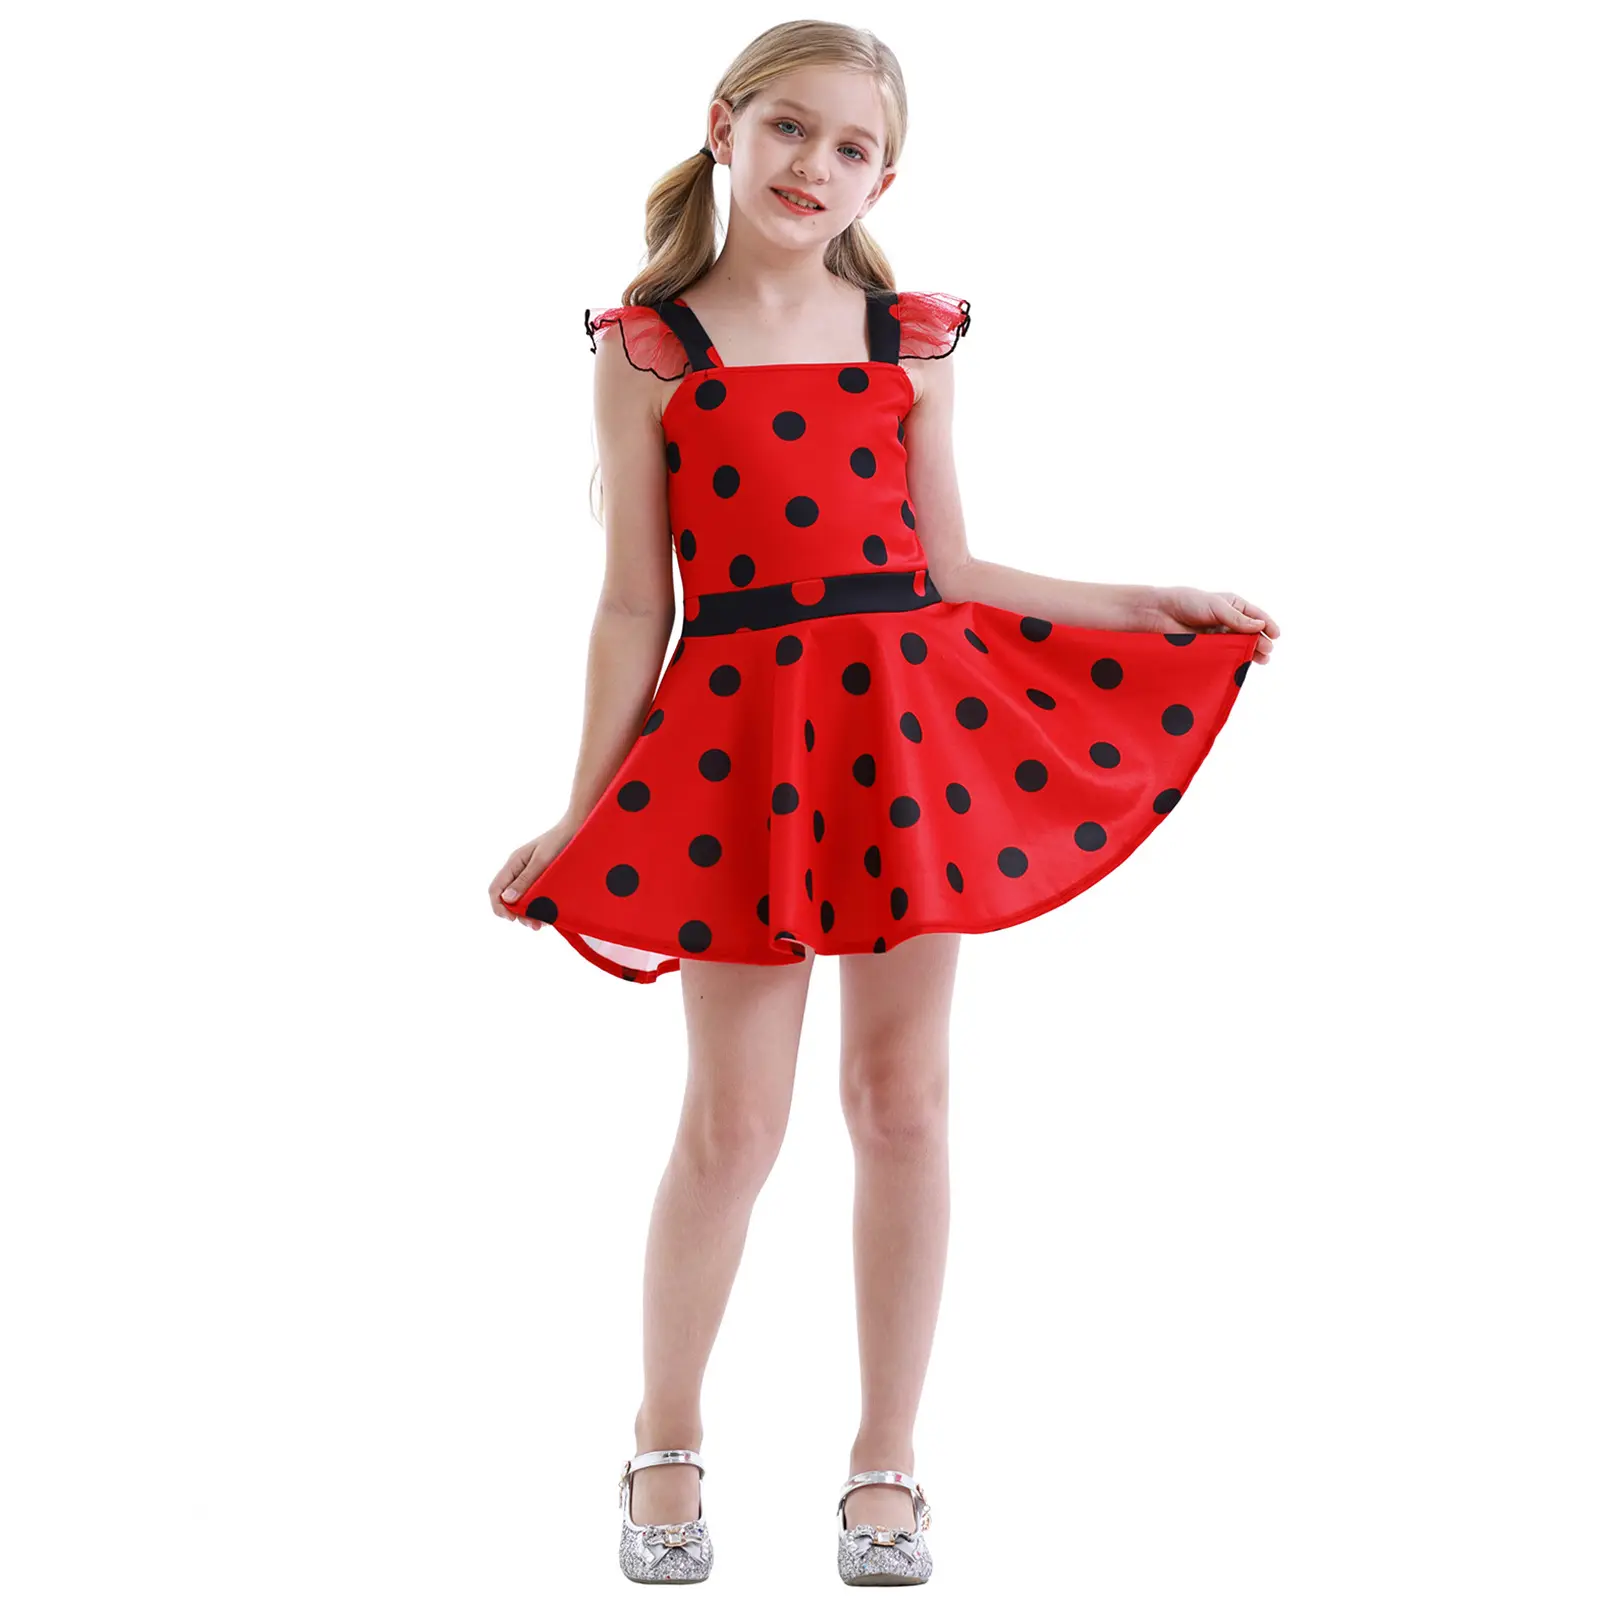 Ladybug Costume Princess Dress para menina para Halloween Carnival